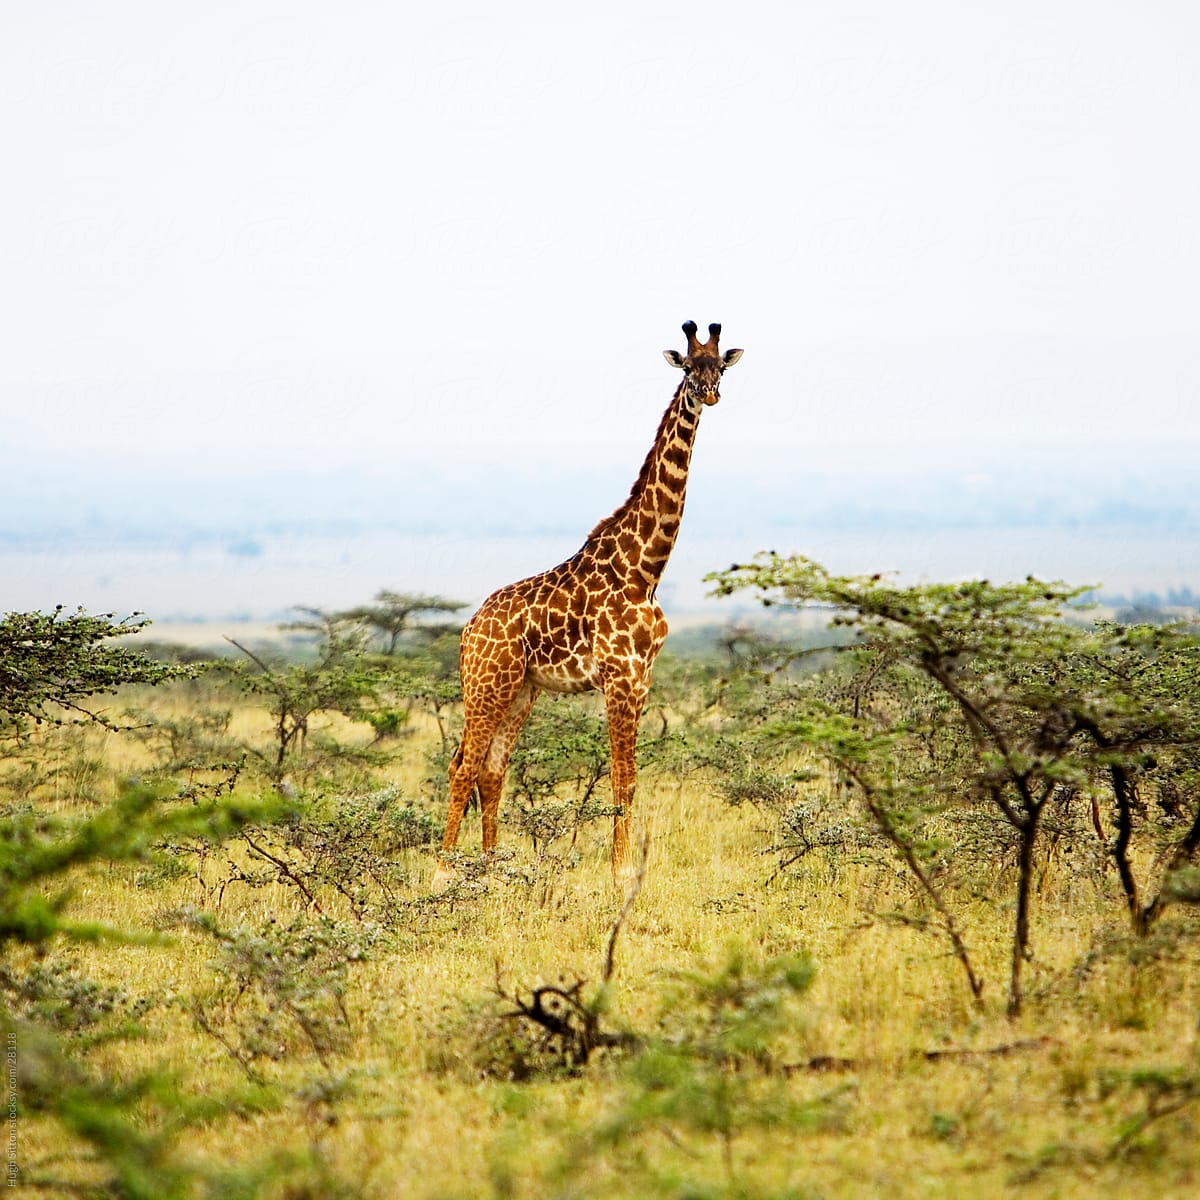 Giraffe in the Maasai Mara.